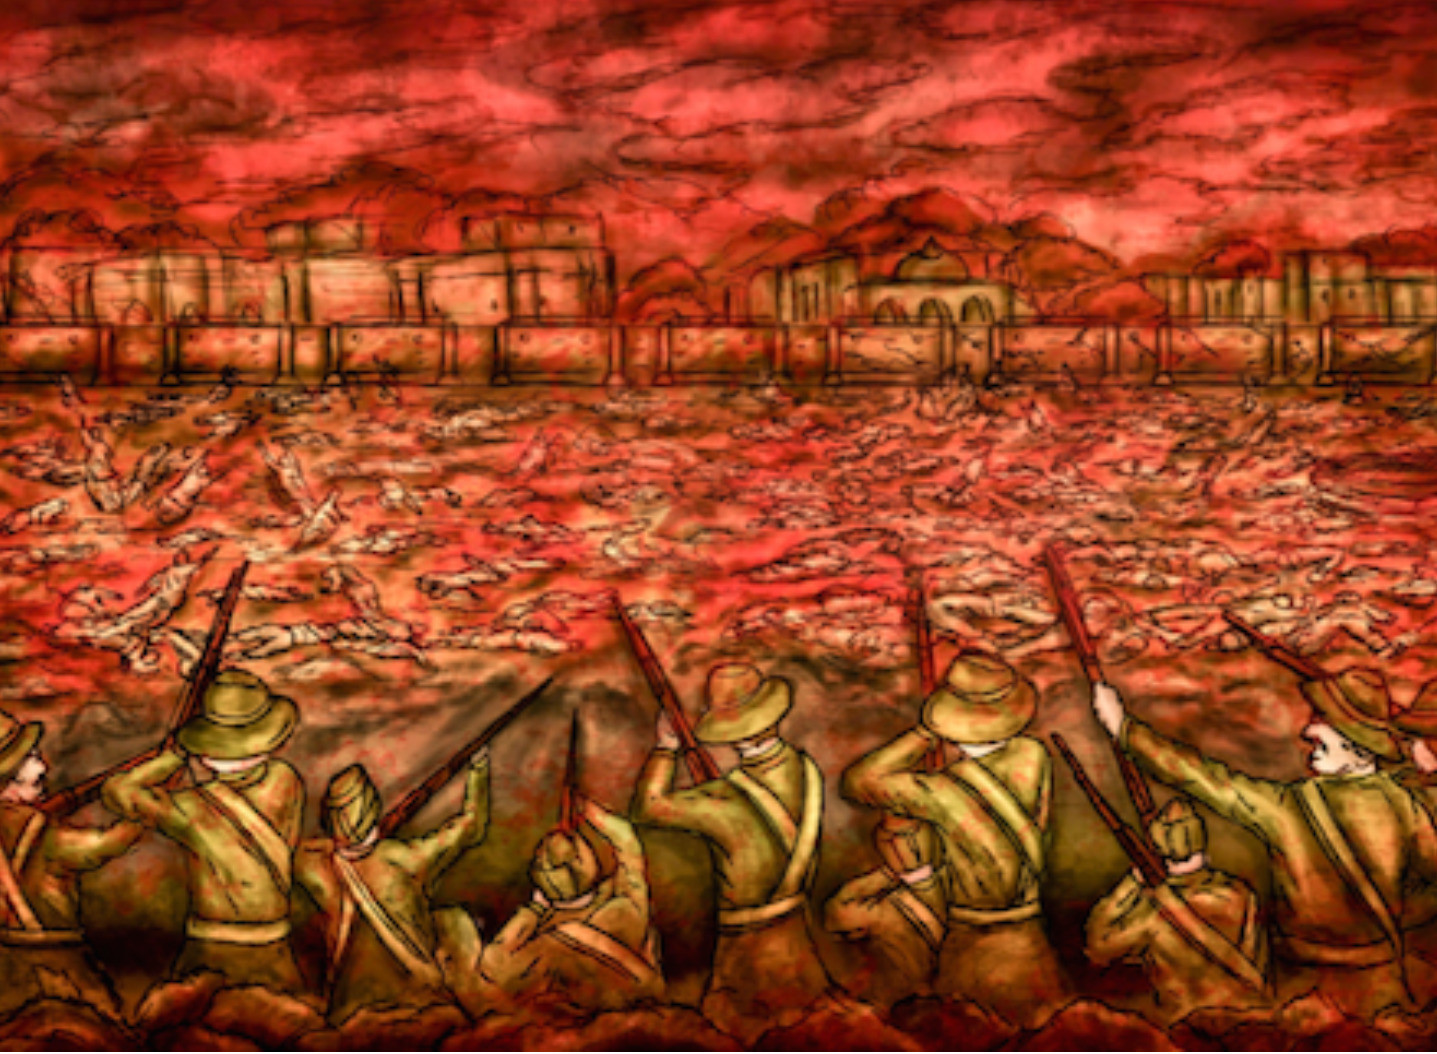 Katliamın resmi, kan gölüne dönmüş piknik alanını gösteriyor.